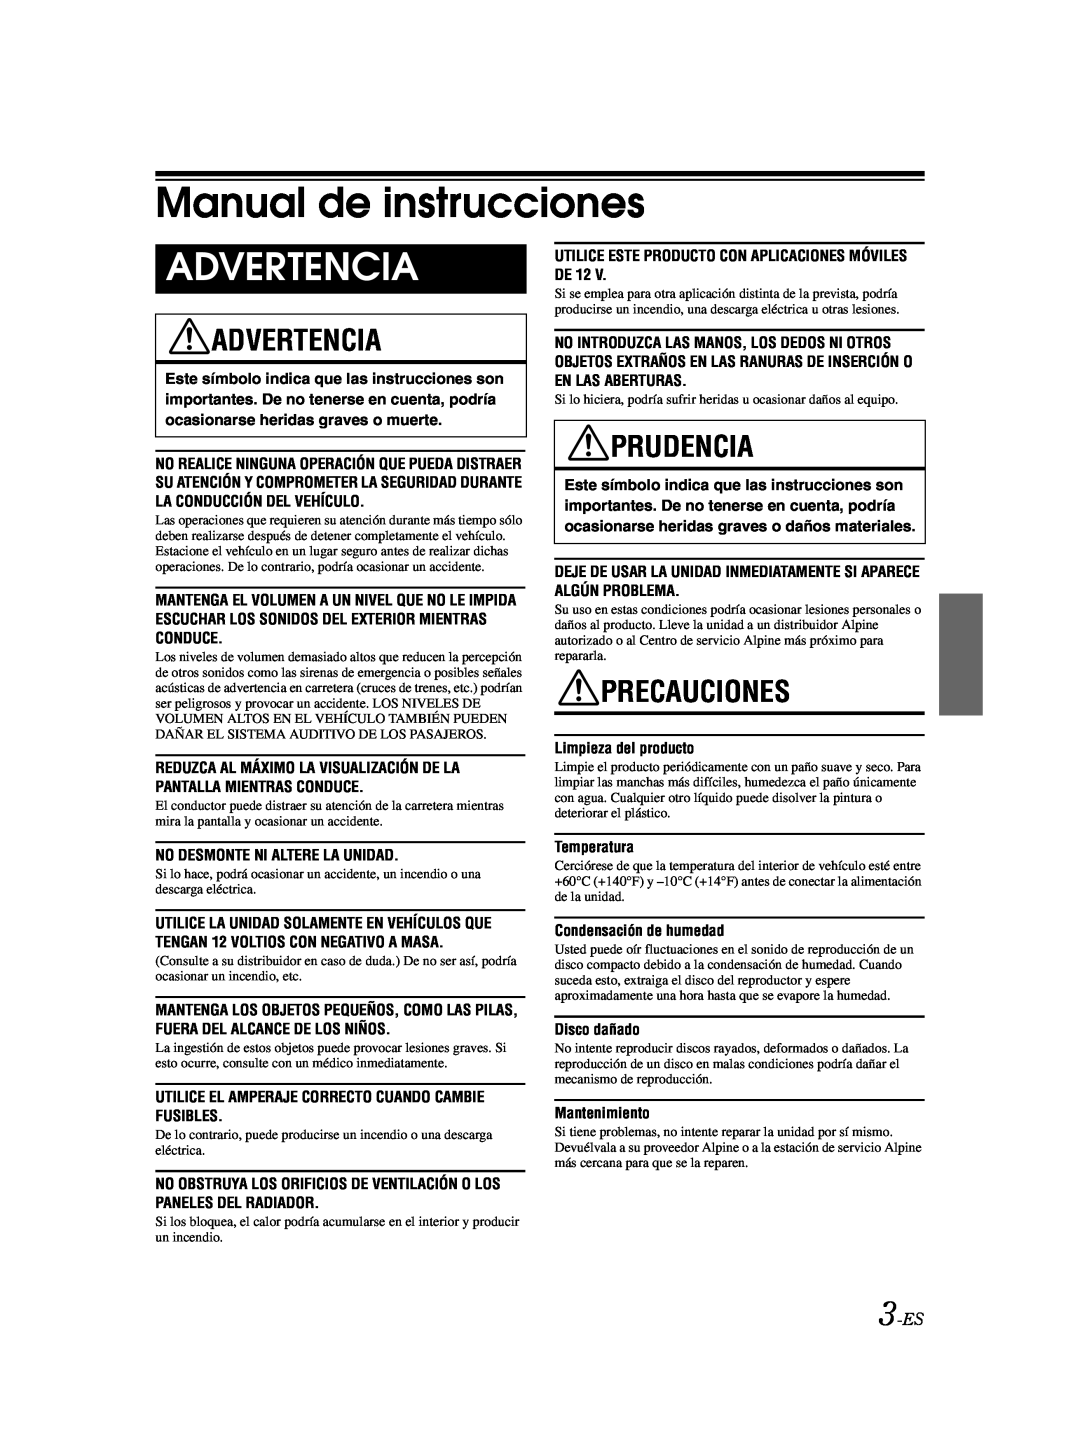 Alpine CDE-9881 owner manual Manual de instrucciones, Advertencia, Prudencia, Precauciones, 3-ES 